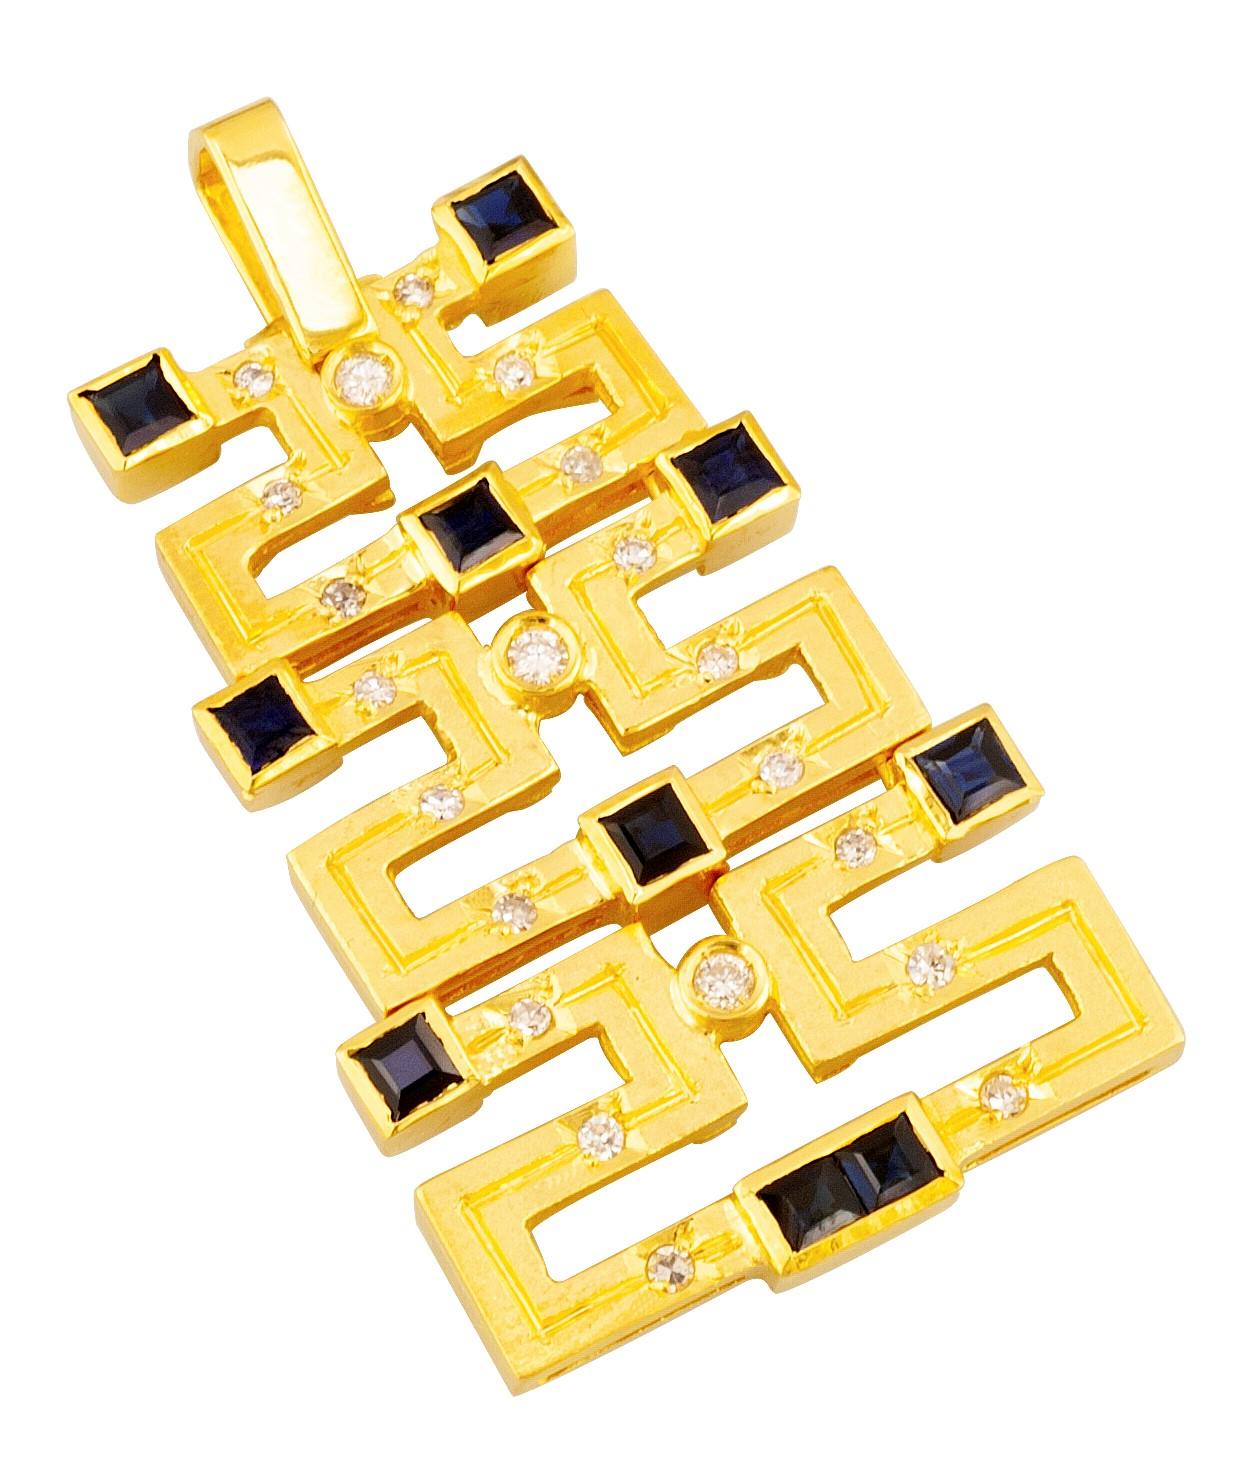 Dieser S.Georgios Designer 18 Karat Gelbgold Anhänger Enhancer ist mit Diamanten und Saphiren gefertigt und folgt dem griechischen Schlüssel-Design, das die Ewigkeit symbolisiert - das Symbol des langen Lebens - eines der bekanntesten Designs der